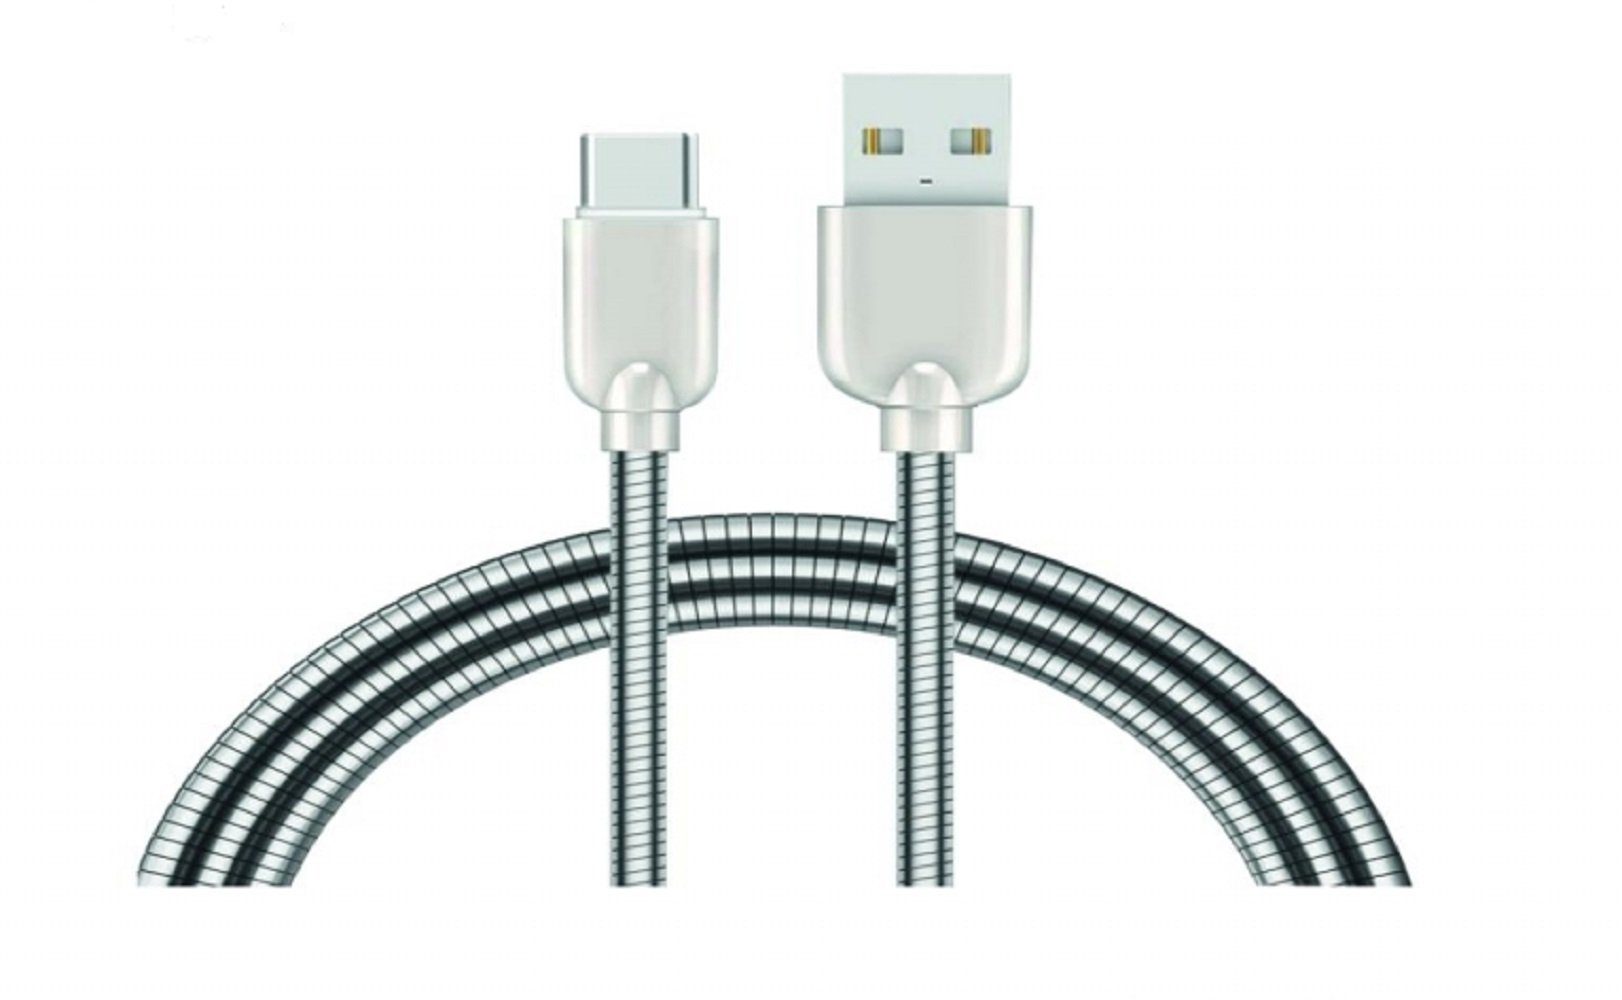 Sunix »Sunix 2A Schnell Ladekabel Nylon Datenkabel 1m Typ-C Metall Kabel  Sehr Biegsam Dehnbar Robuste Stecker Fast Charge Power Kabel« USB-Kabel, USB -C online kaufen | OTTO